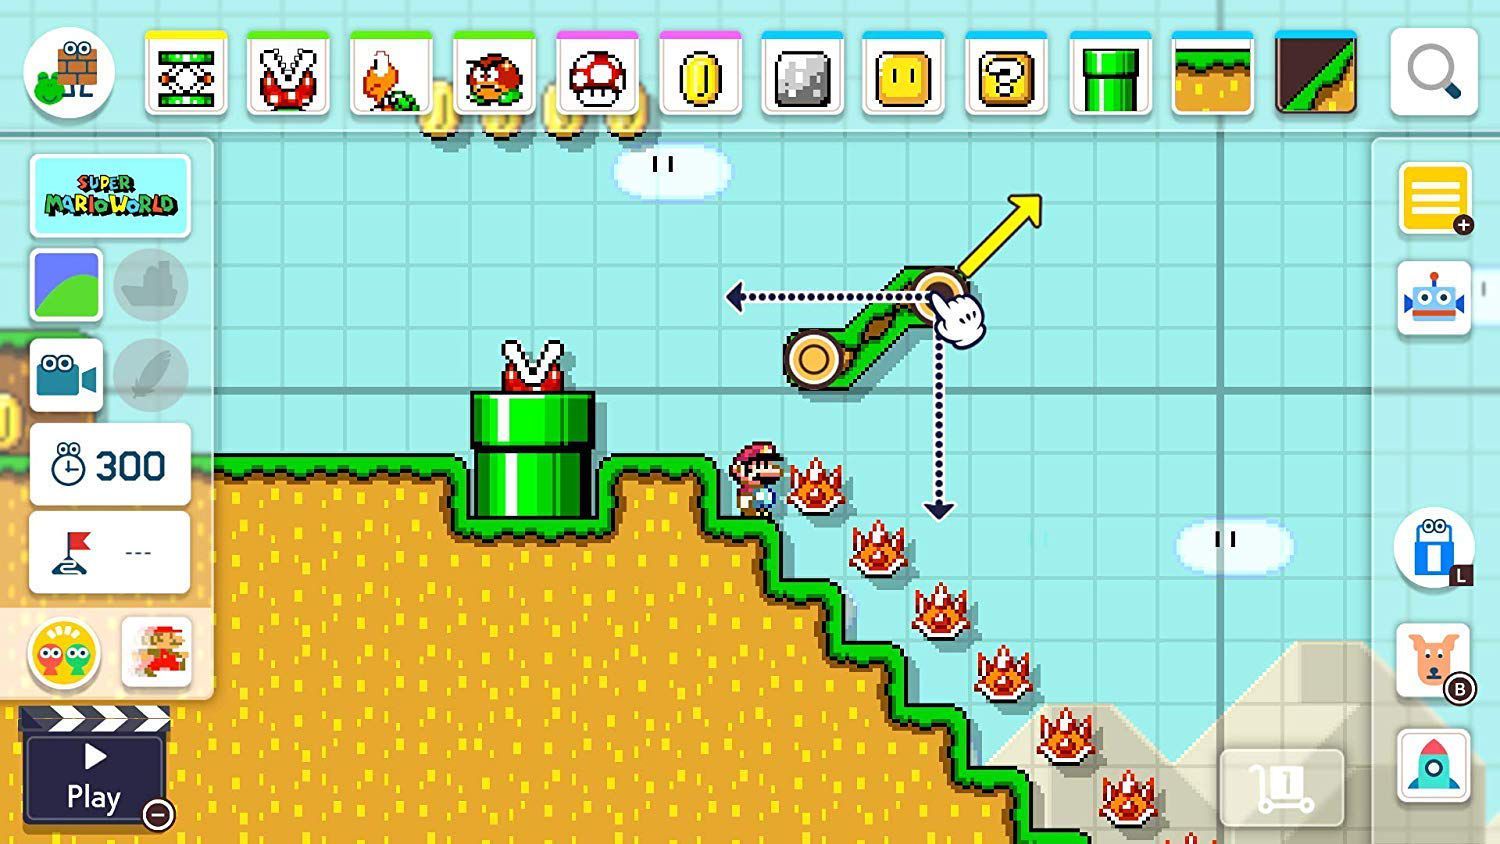 Buy Super Mario Maker 2 Nintendo switch ( Nintendo 3DS ) Online at Best ...